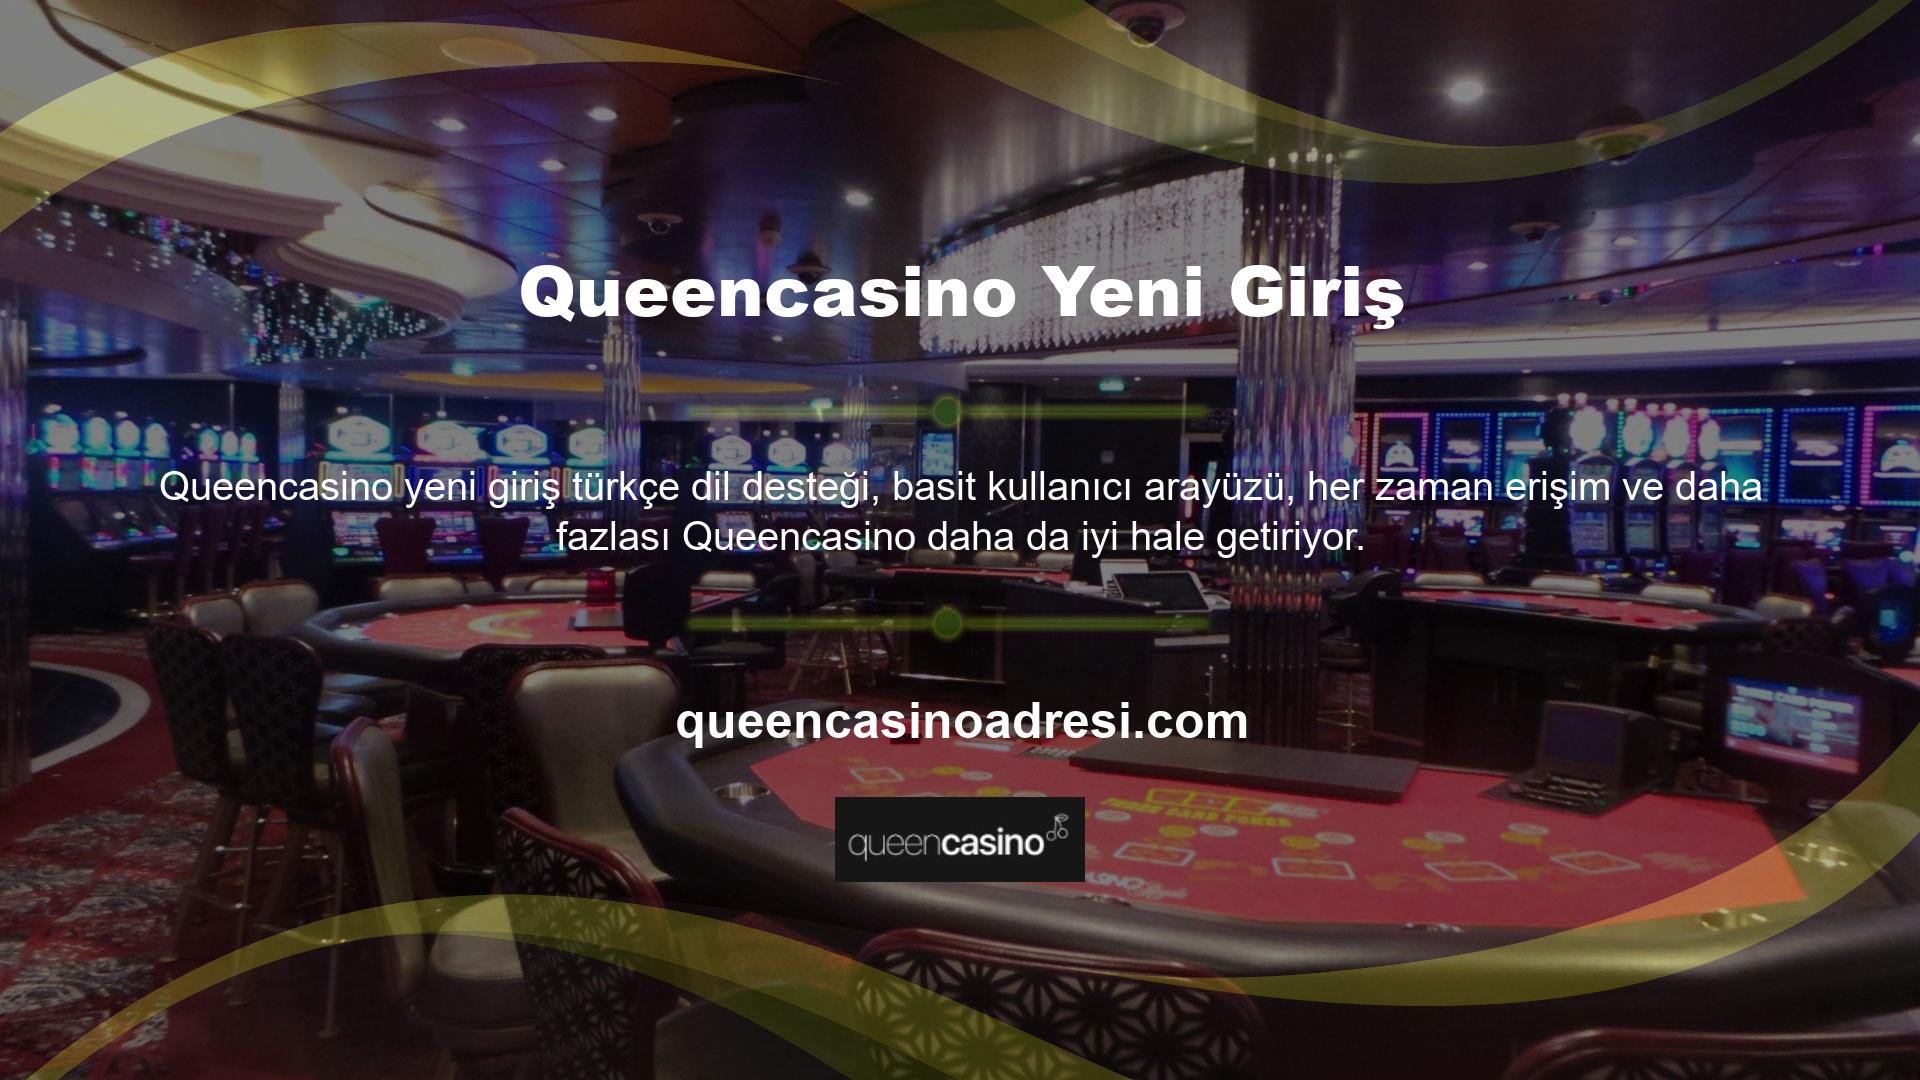 Sitemizden kayıt linki alarak Queencasino kayıt olabilirsiniz